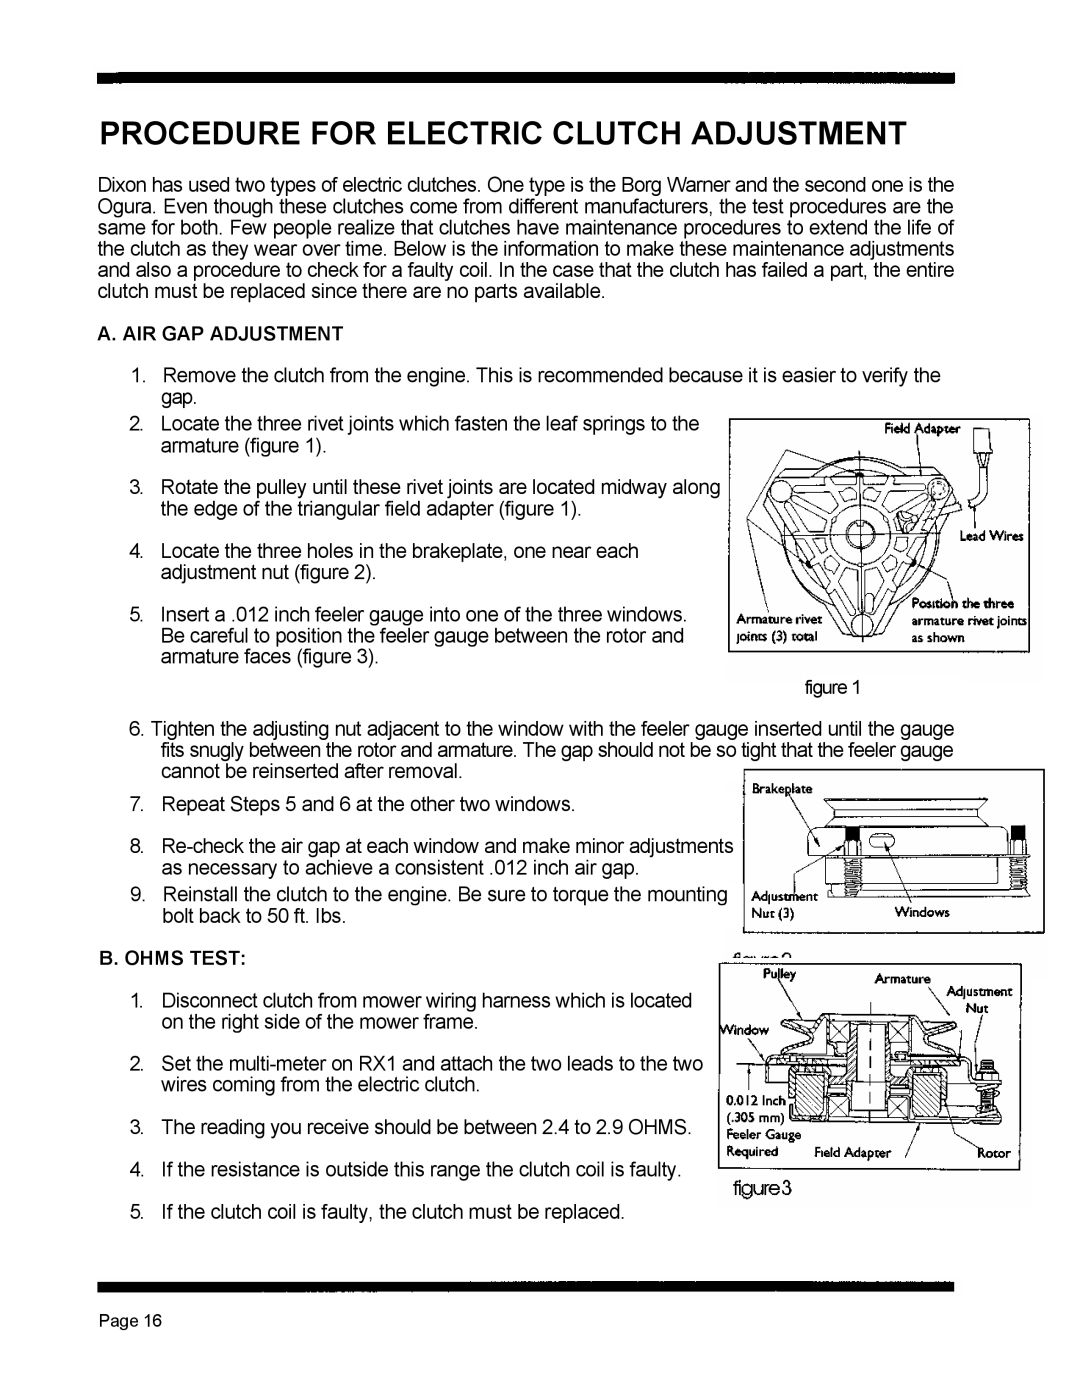 Dixon 5501 manual Procedure For Electric Clutch Adjustment, A. Air Gap Adjustment, B. Ohms Test 